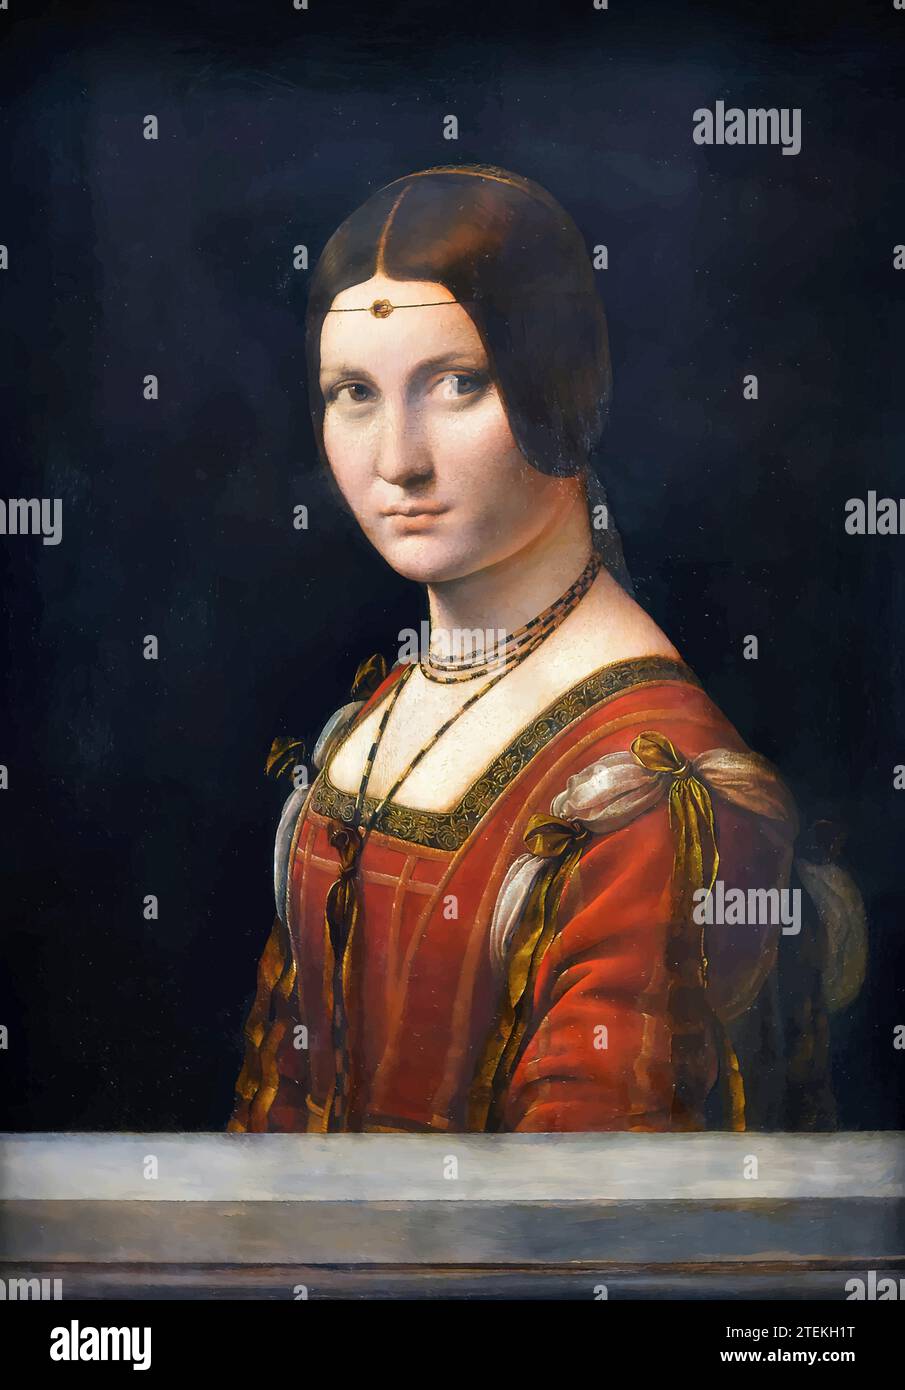 Porträt einer Dame vom Hof von Mailand (La Belle Ferronniere), um 1490-95 (Gemälde) des Künstlers Vinci, Leonardo da (1452-1519) / Italienisch. Stock Vektor